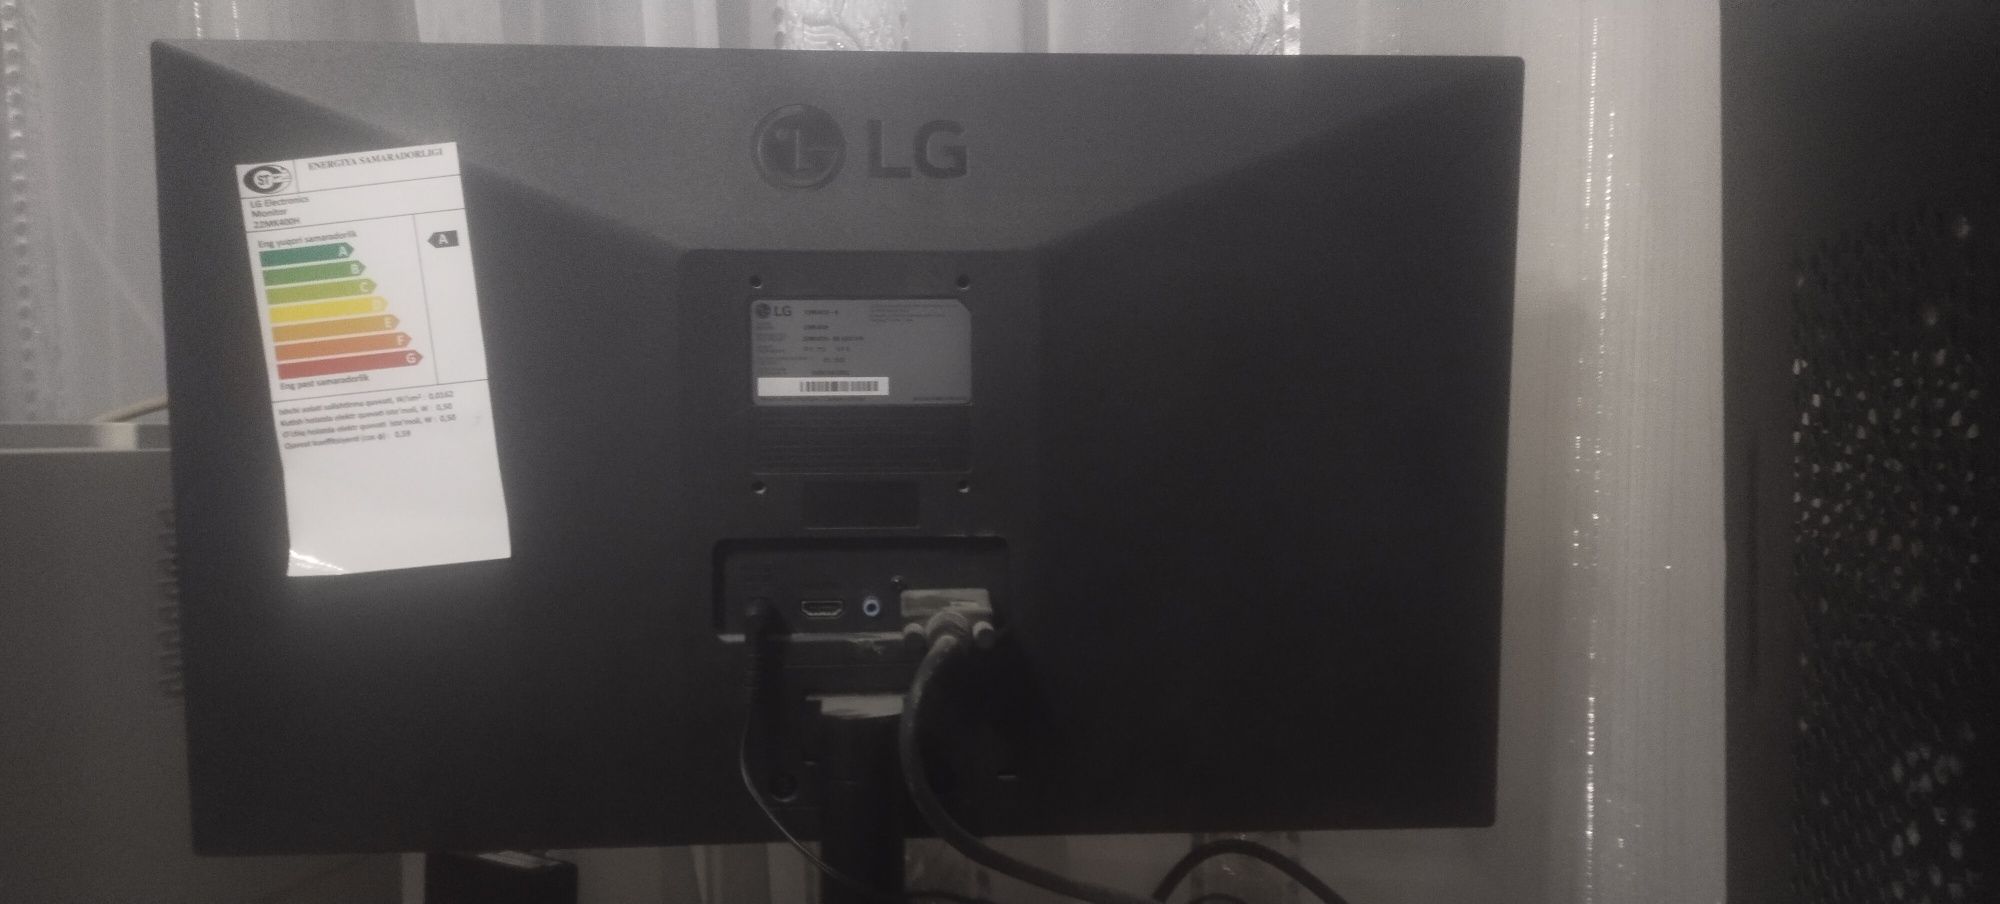 Kampyuter LG monitorli garantiyasi bilan srochna sotiladi